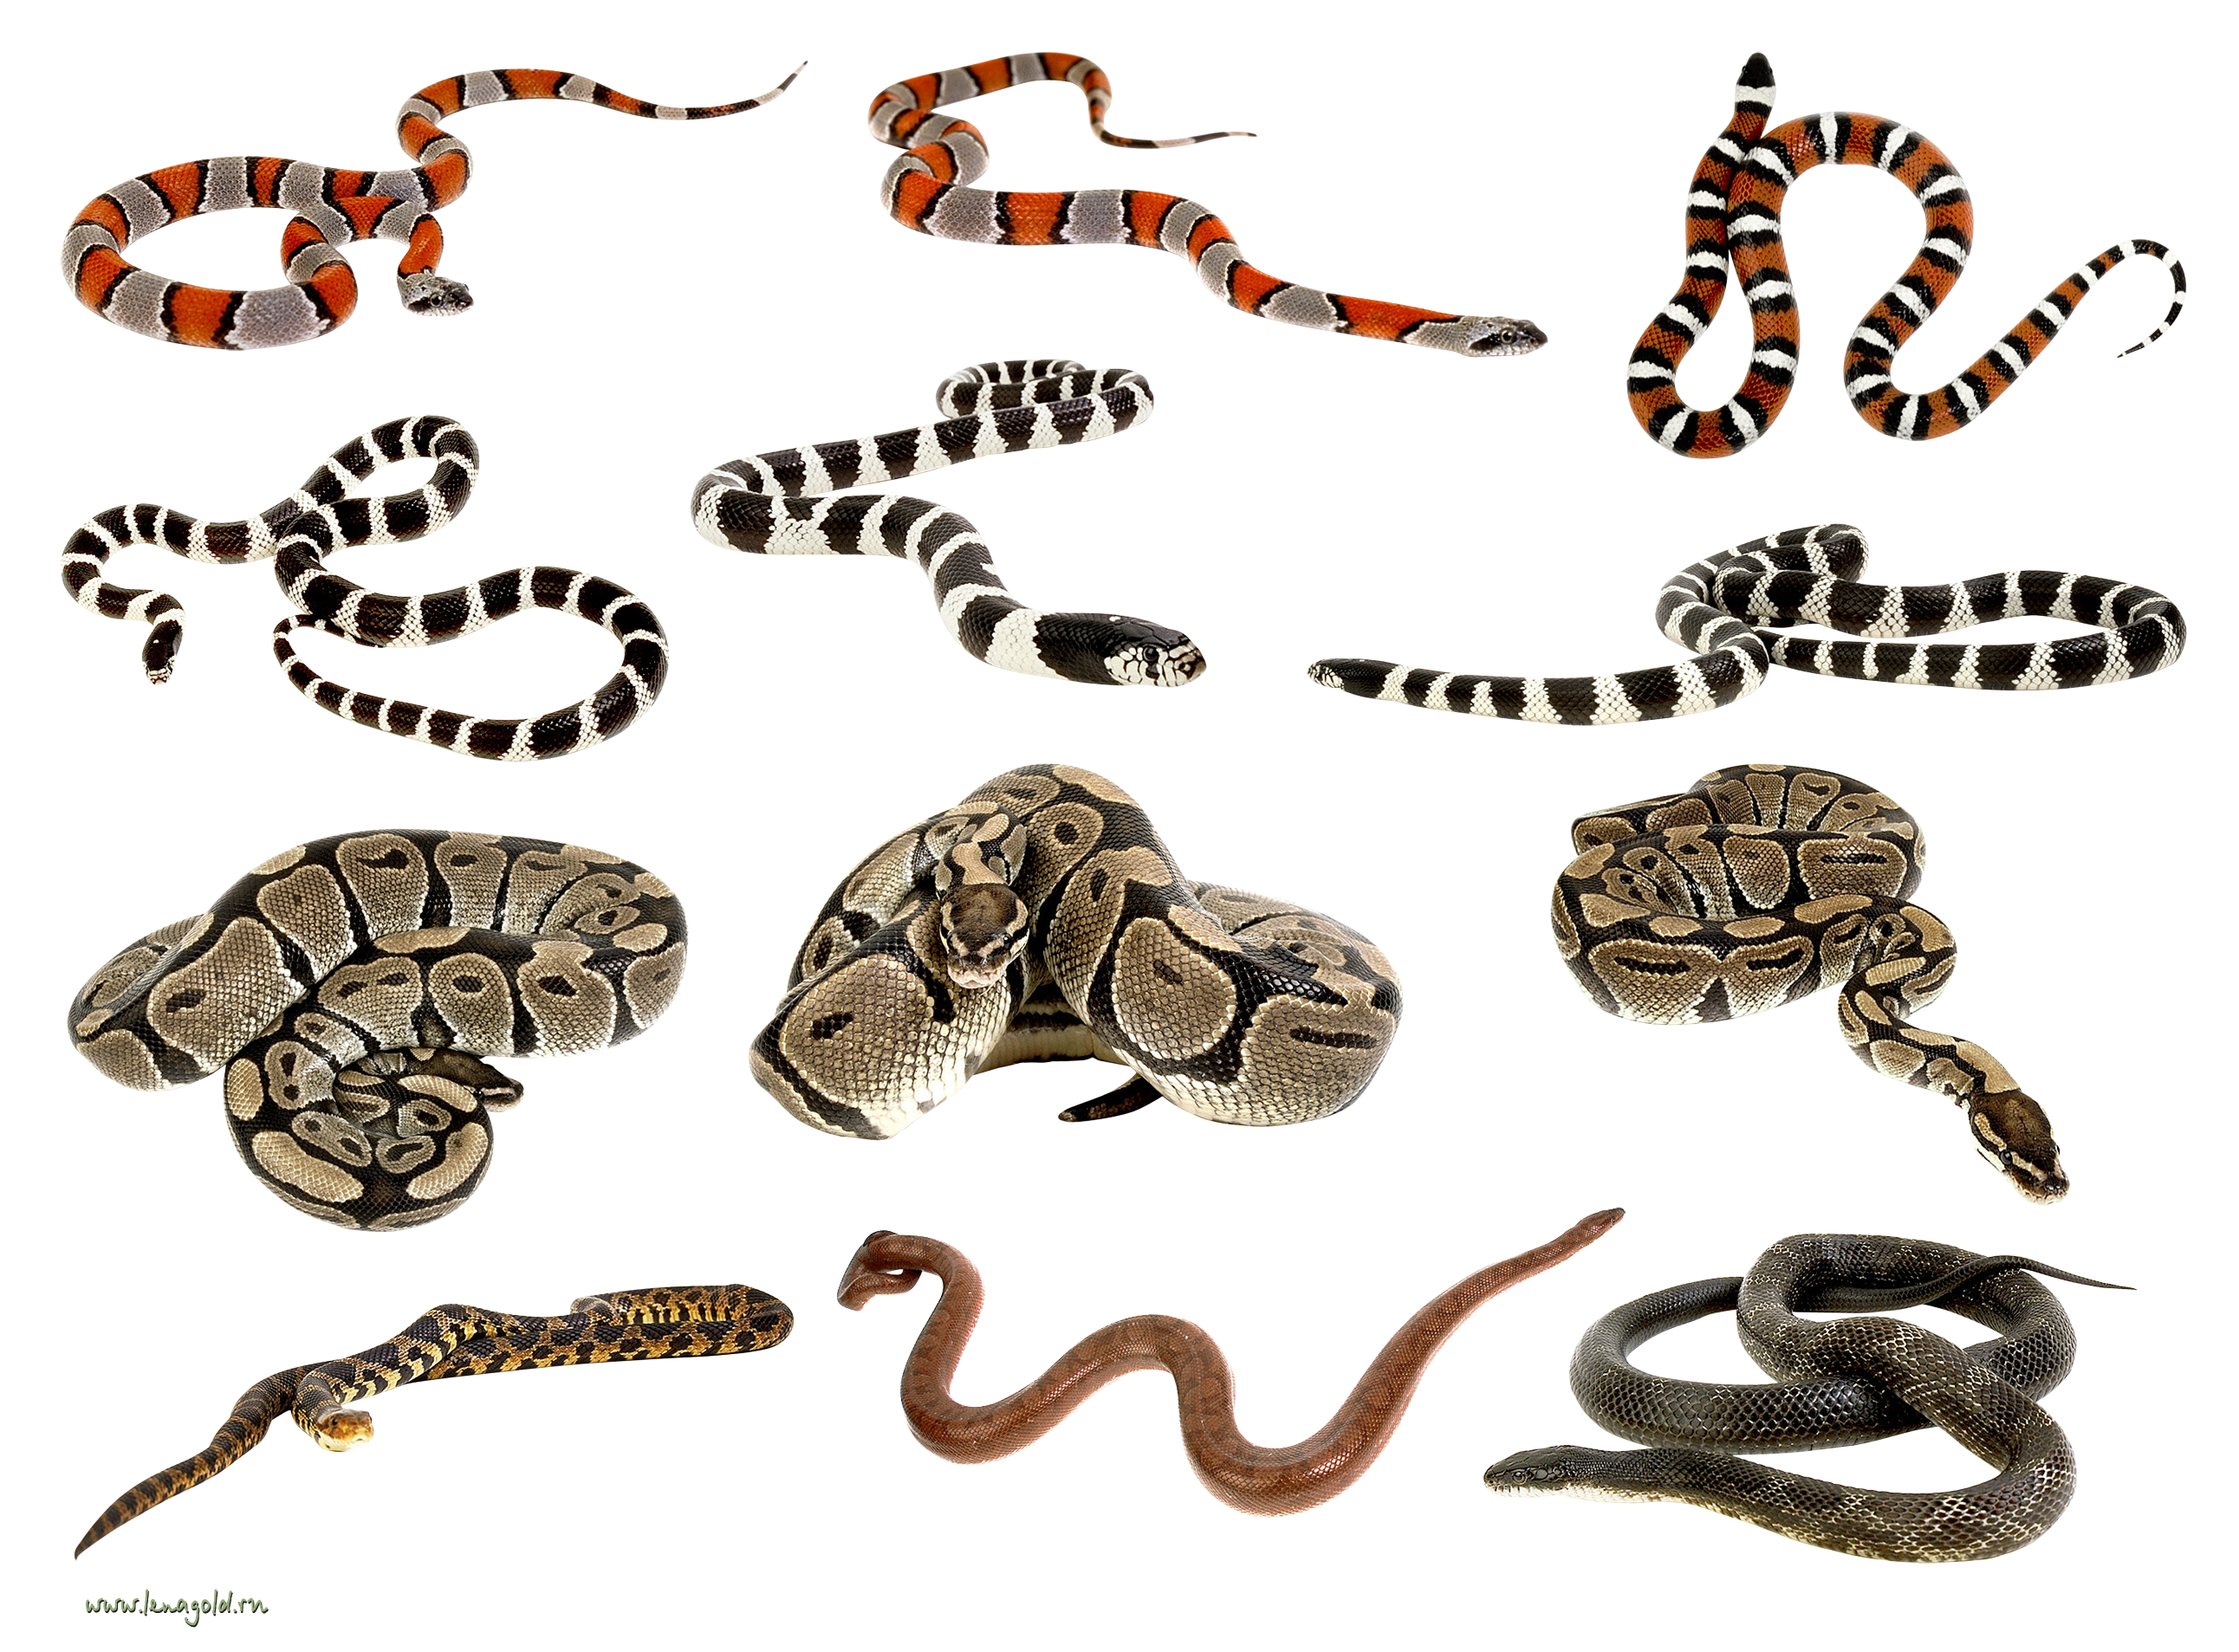 Wiele węży razem